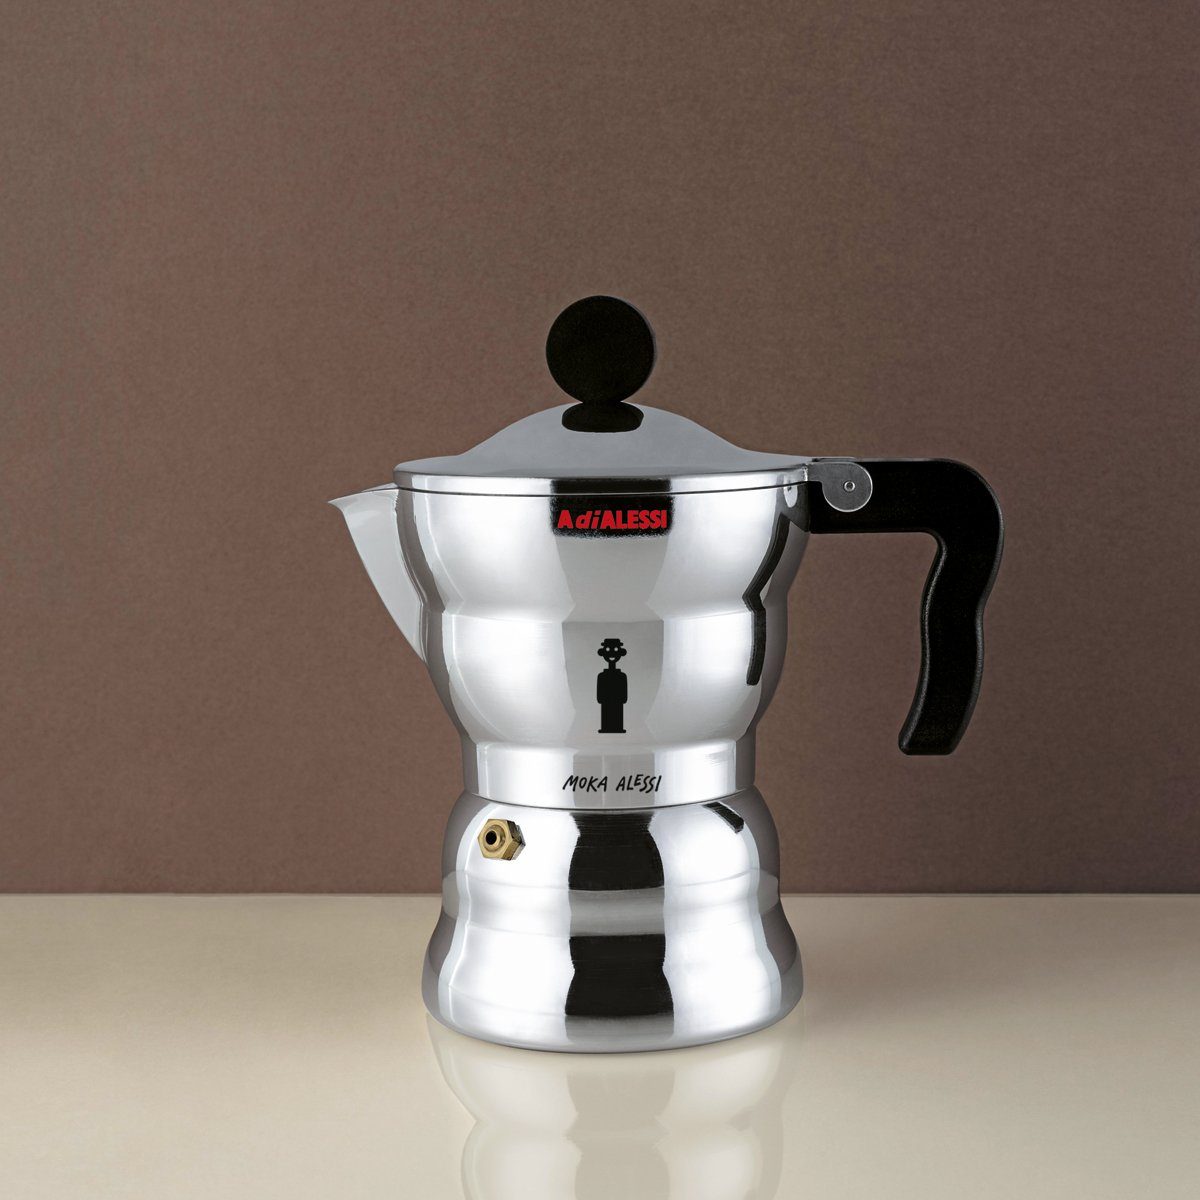 Alessi Espressokocher Espressokocher MOKA Classic 1, 0.07l Kaffeekanne,  Nicht für Induktion geeignet online kaufen | OTTO